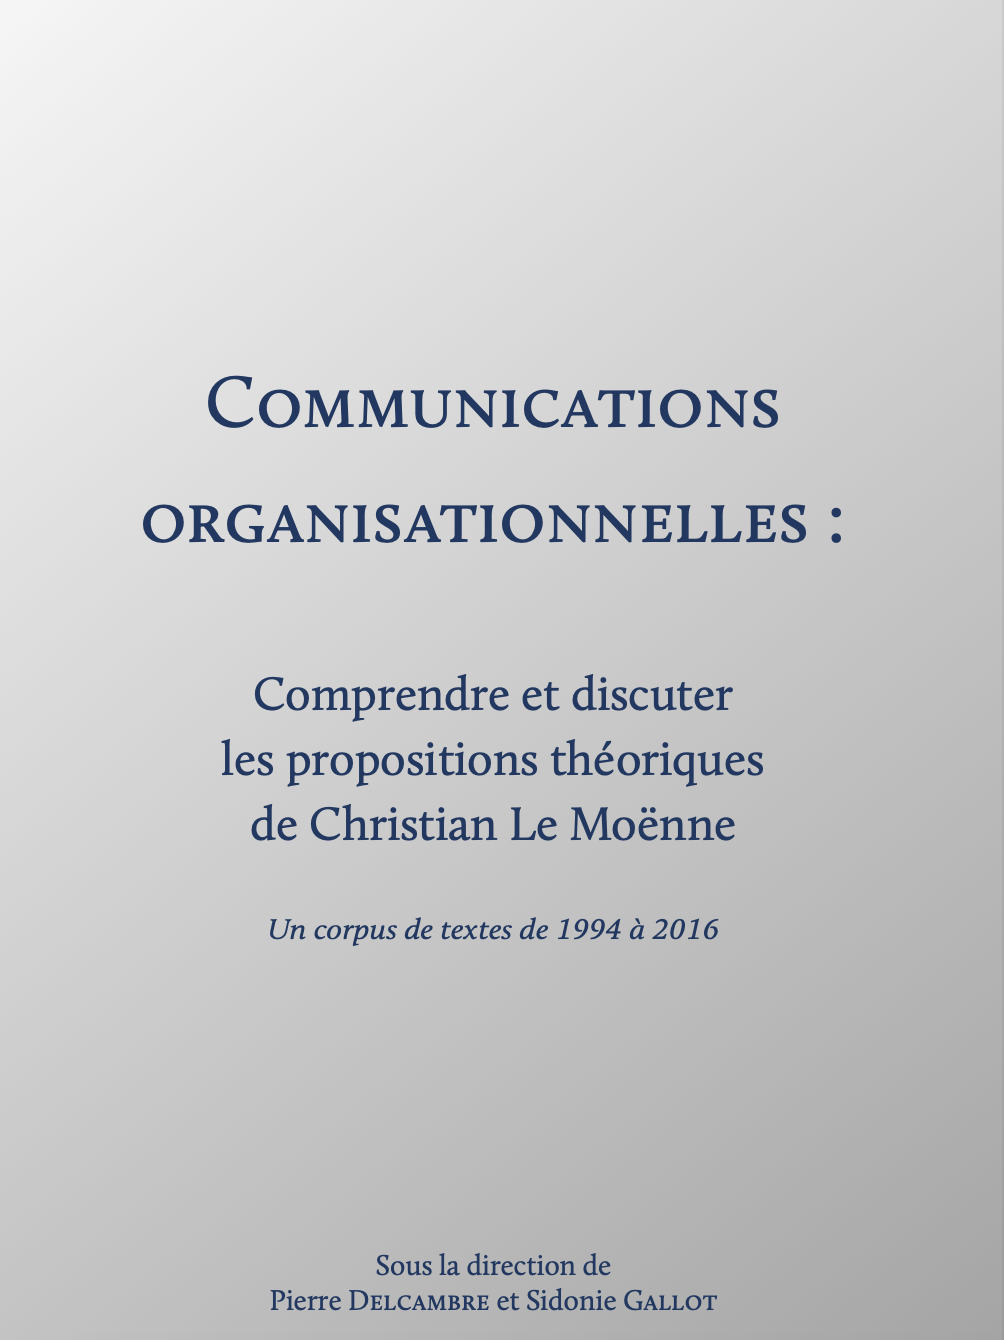 [Publication] Communications organisationnelles : Comprendre et discuter les propositions théoriques de Christian Le Moënne